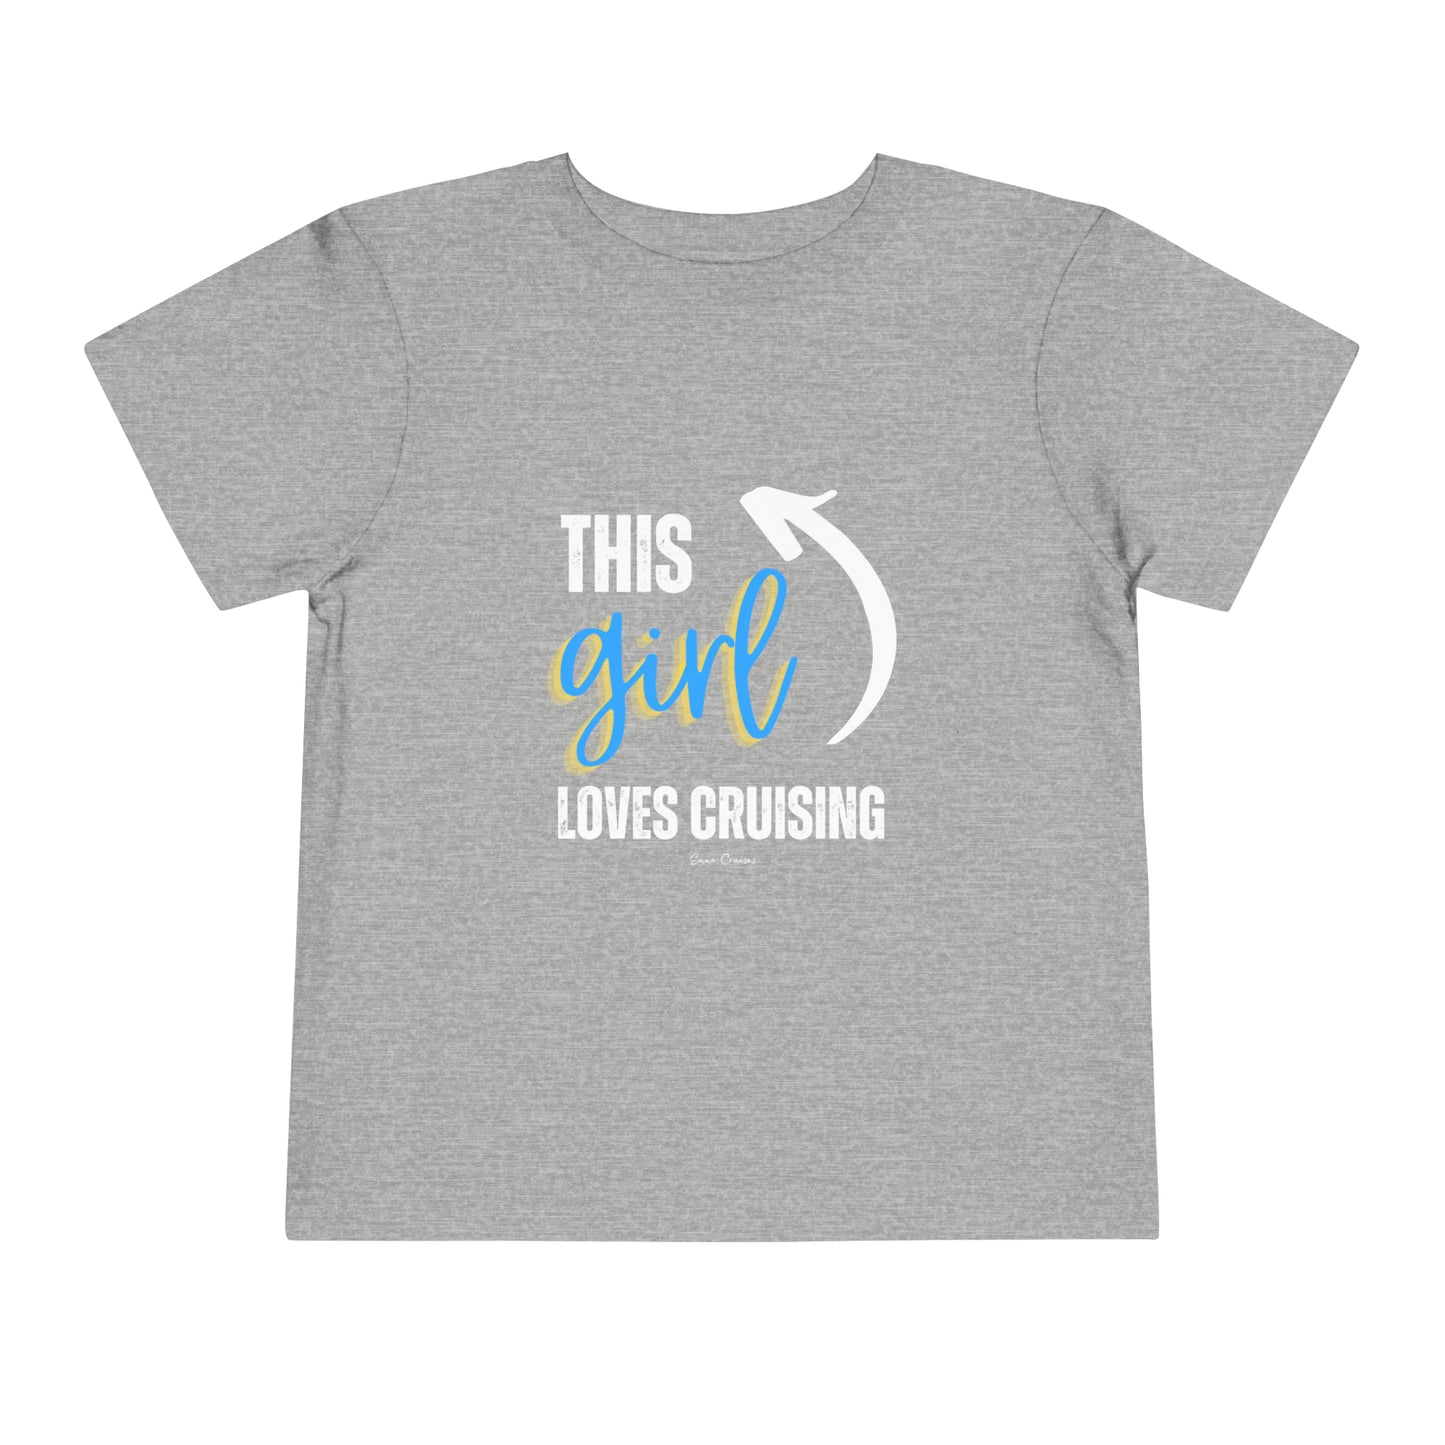 This Girl Loves Cruising - Toddler UNISEX T-Shirt